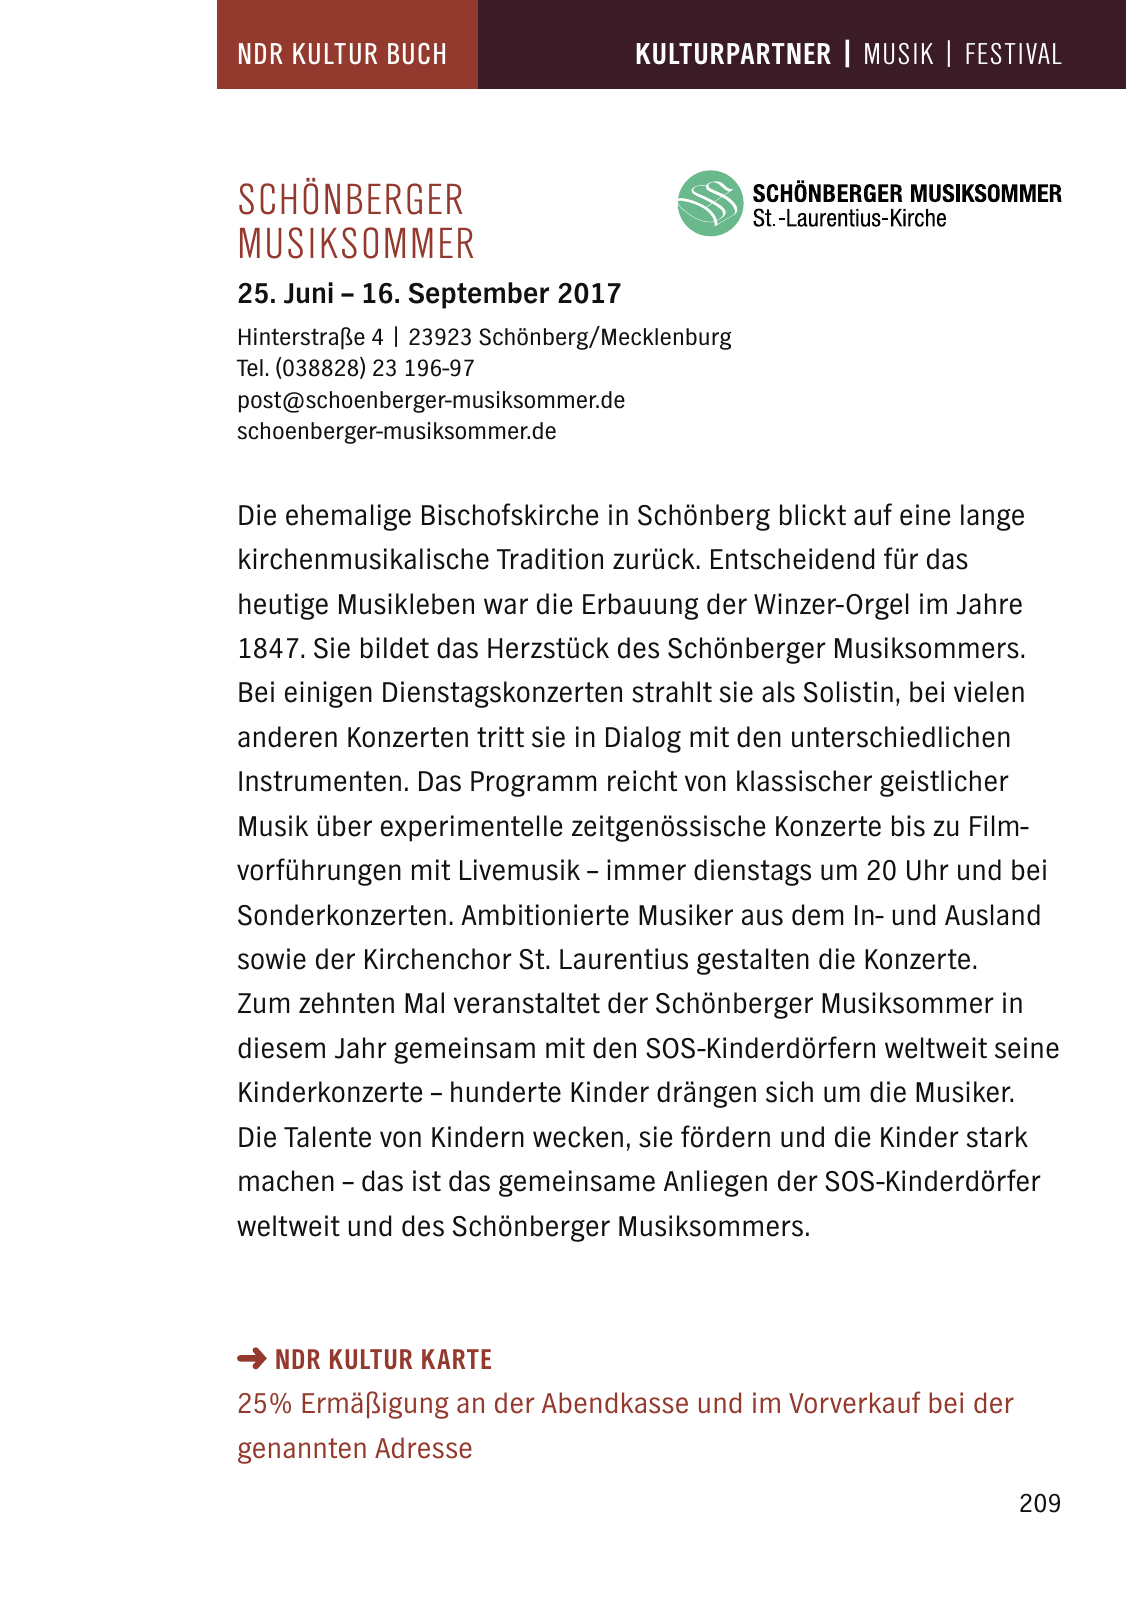 Vorschau NDR Kultur Buch 2017 Seite 211